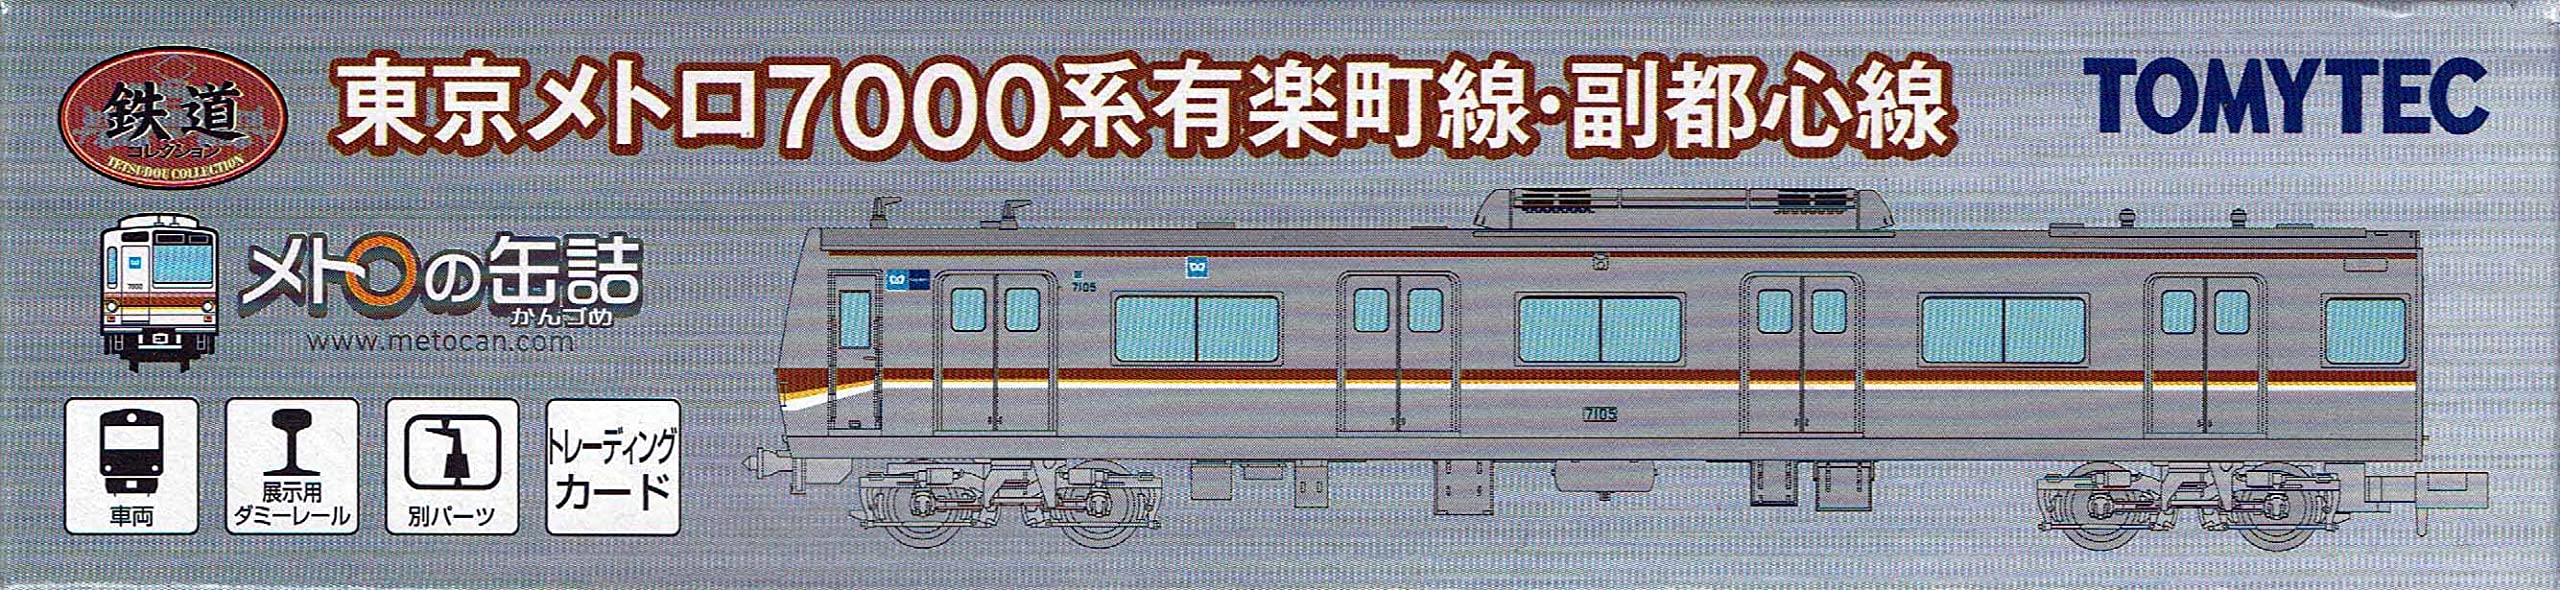 Tomytec Tokyo Metro 7000 Series Yurakucho & Fukutoshin Line Railway Collection